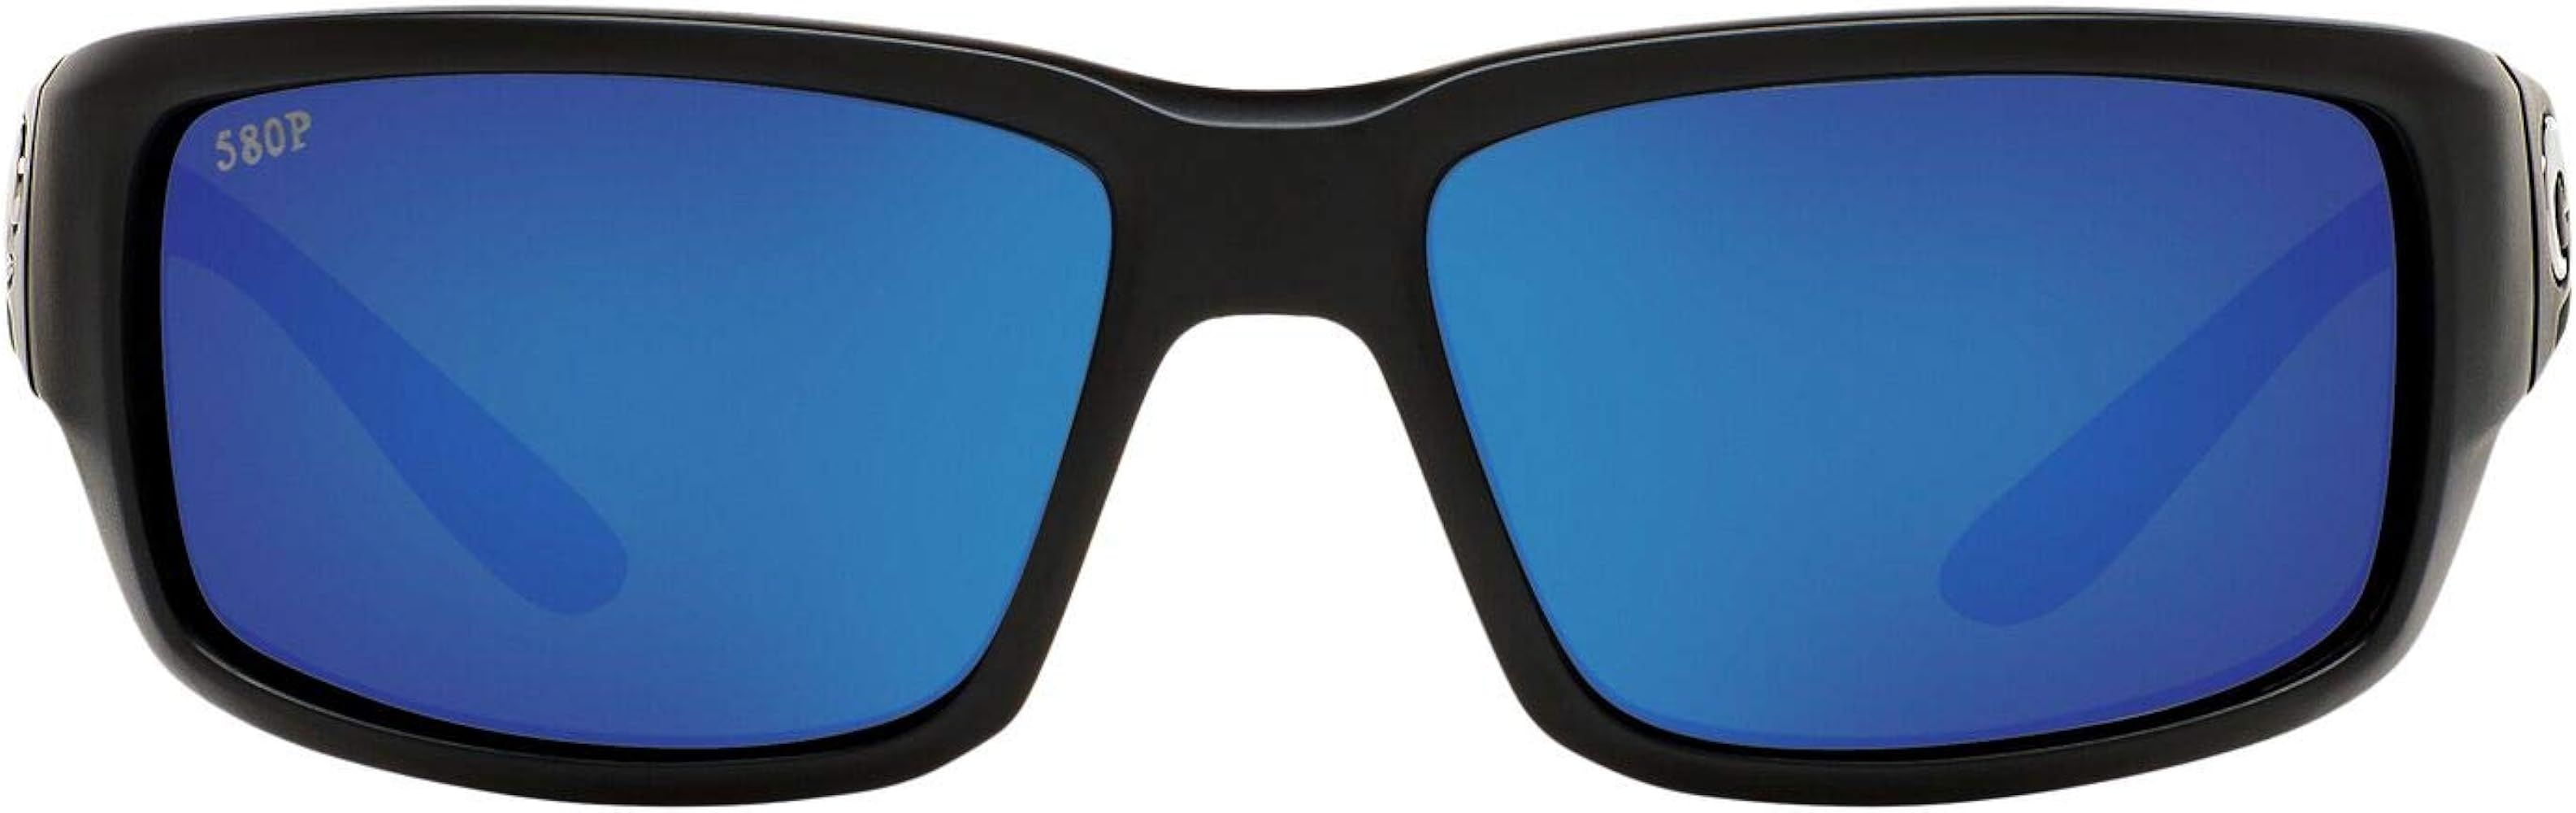 Costa Del Mar Men's Fantail 580p Rectangular Sunglasses | Amazon (US)